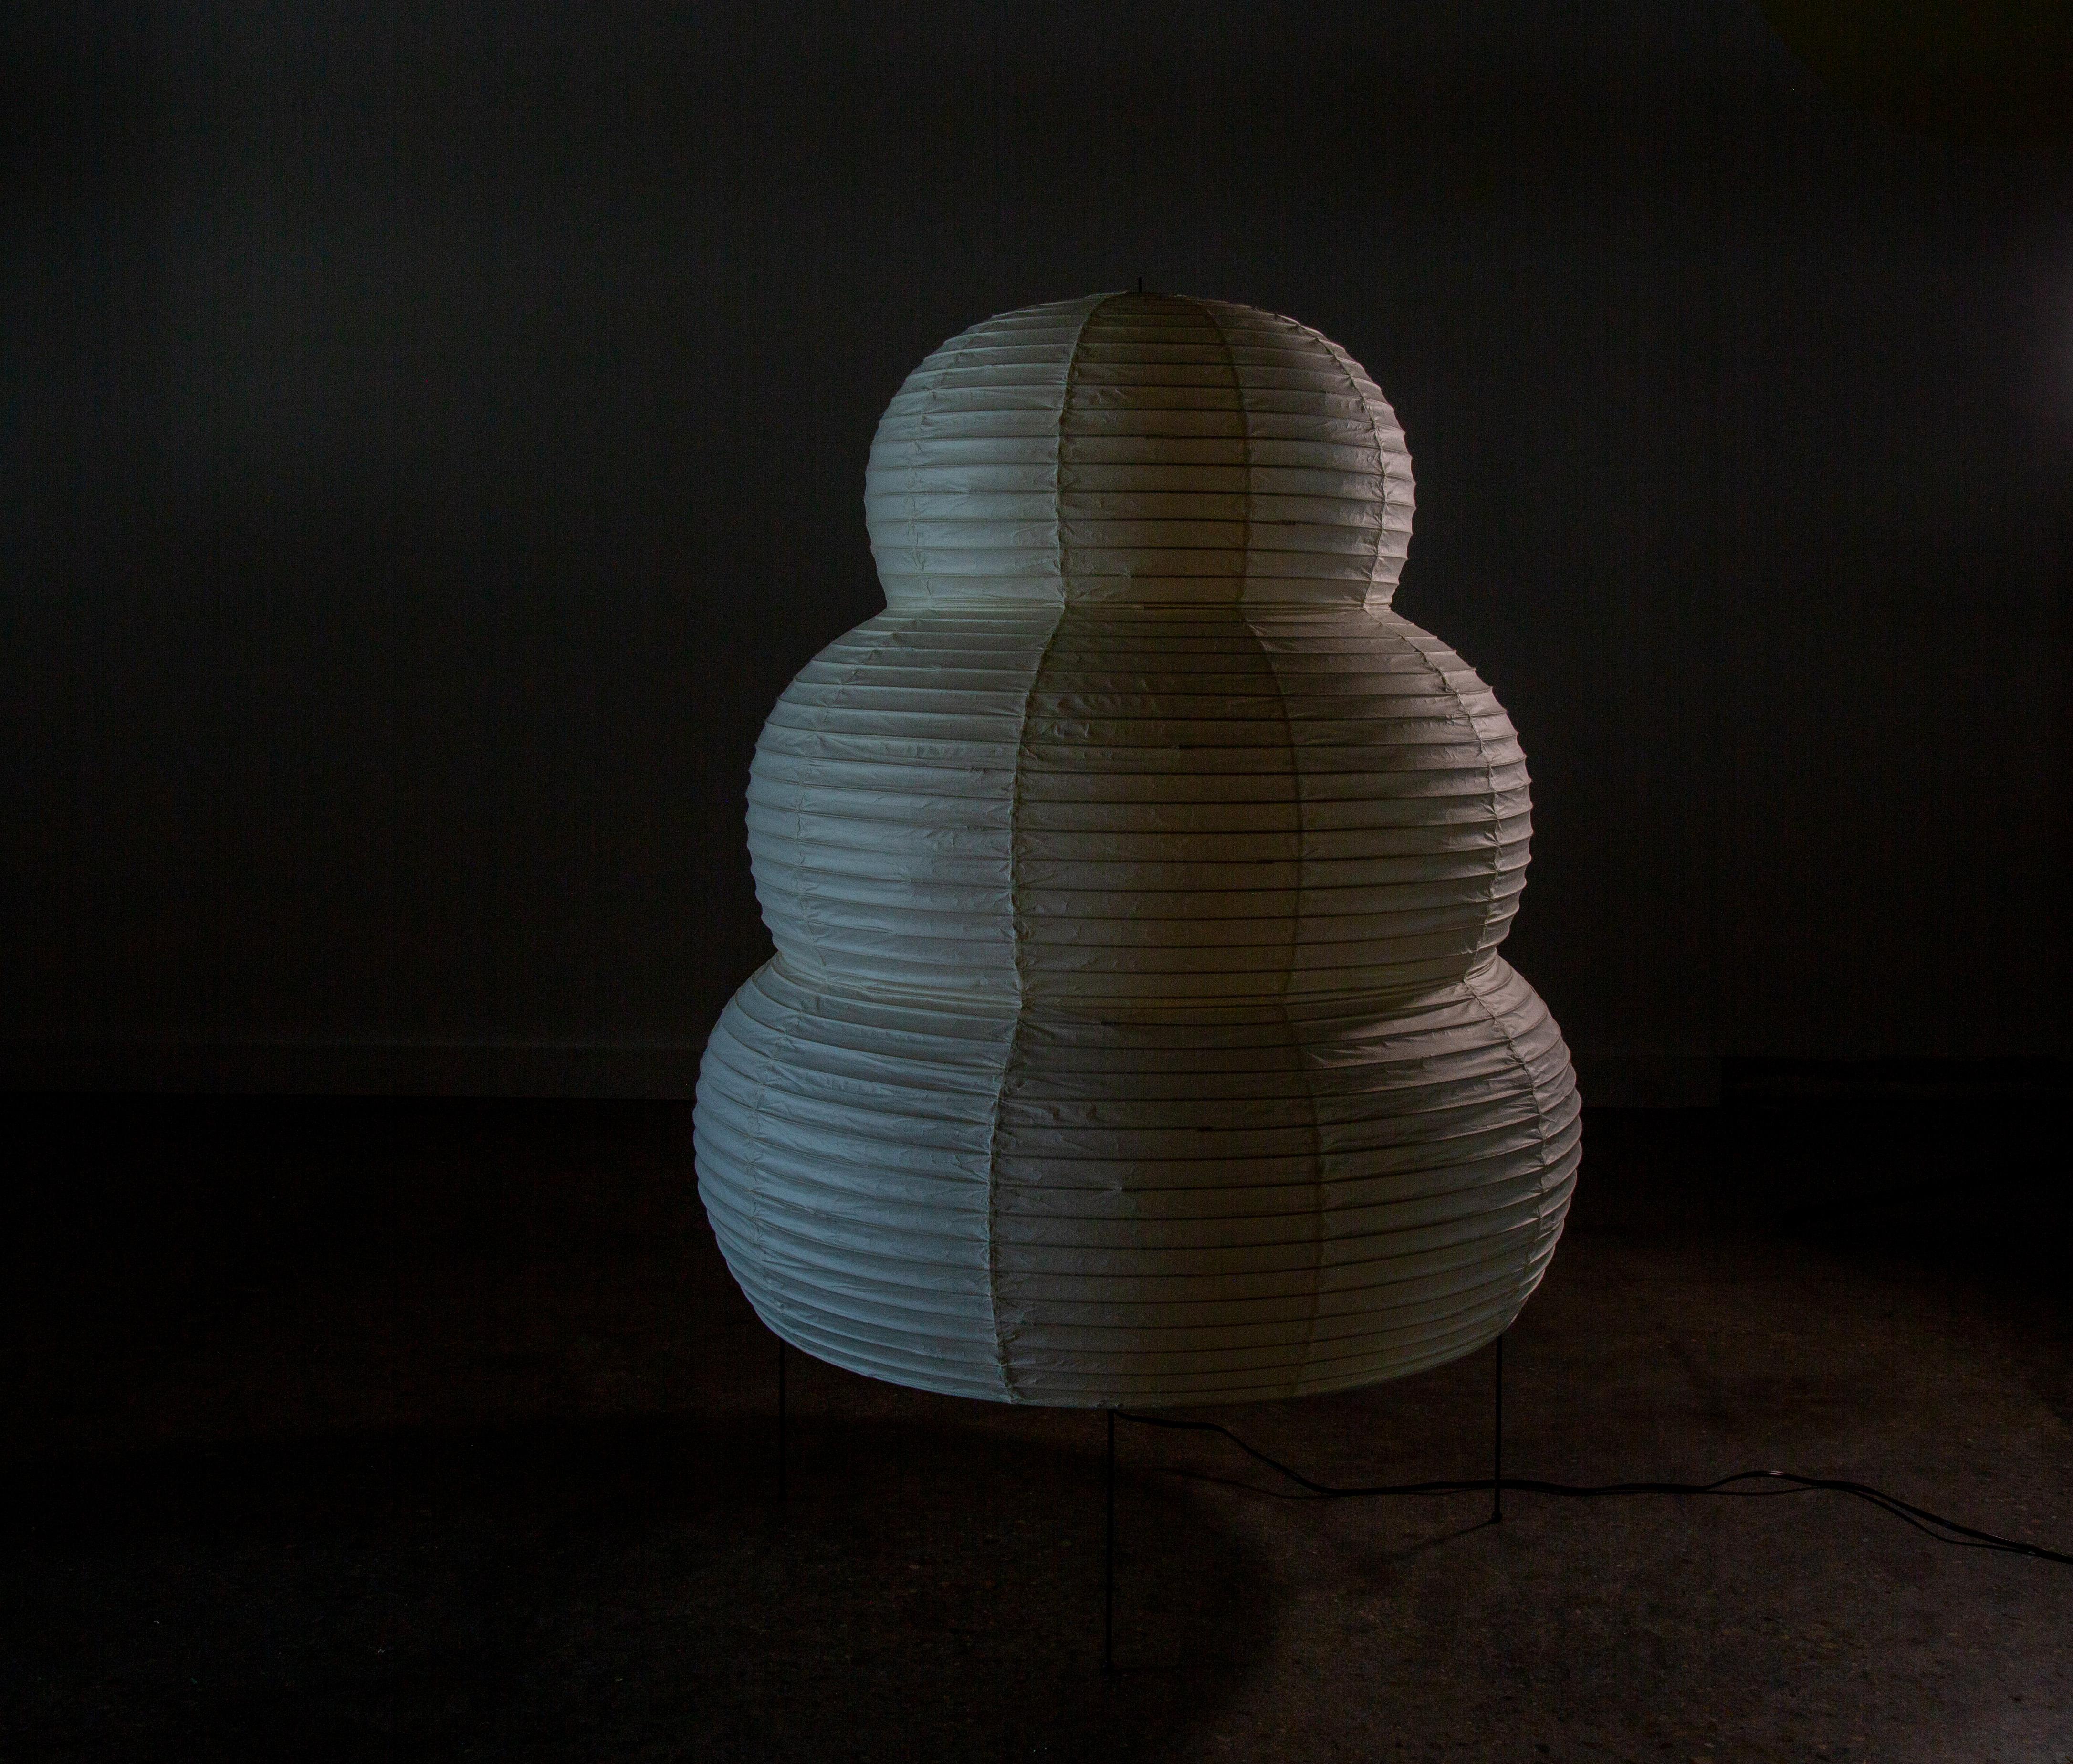 Isamu Noguchi Akari Skulptur Stehleuchte Modell 25N. Die überdimensionale Stehlampe mit einer Höhe von 46